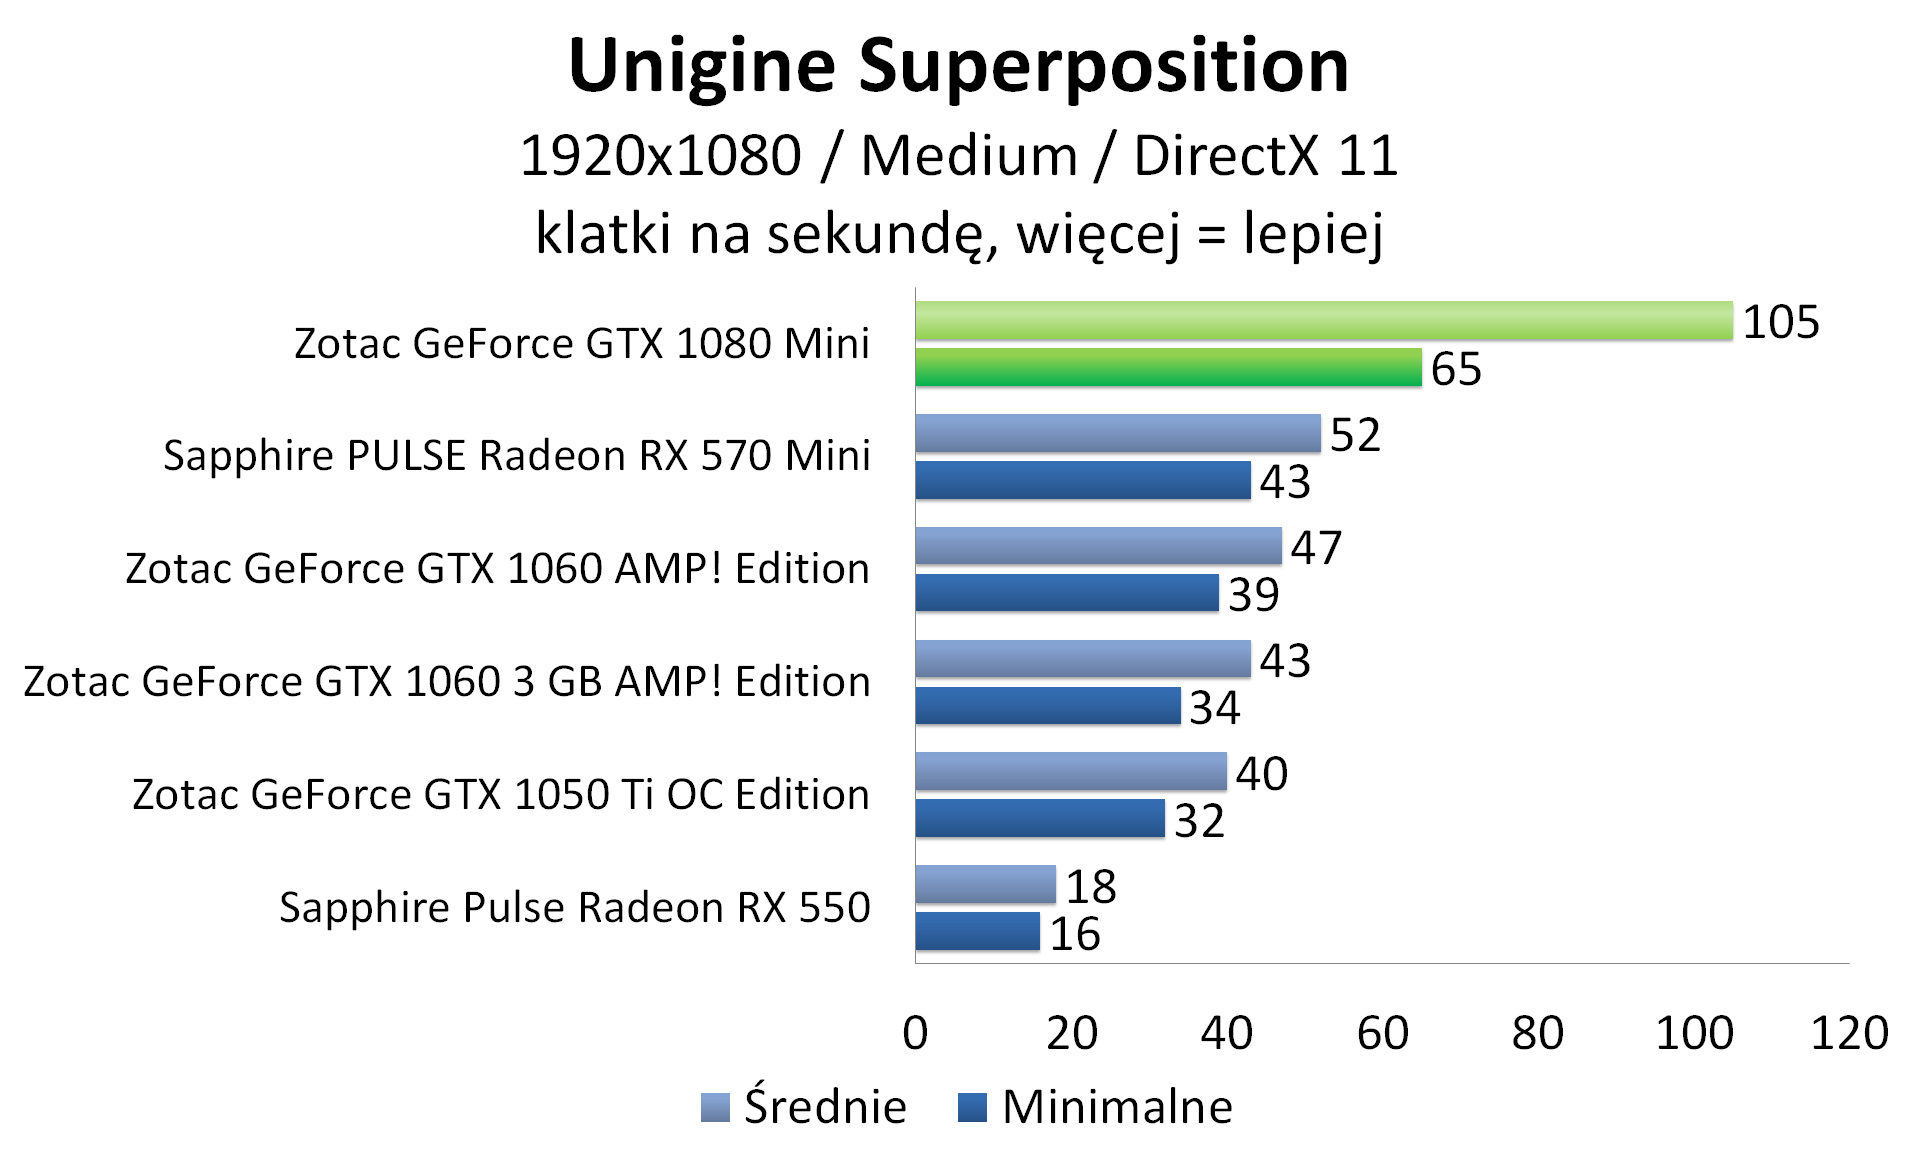 Zotac GeForce GTX 1080 Mini - Unigine Superposition